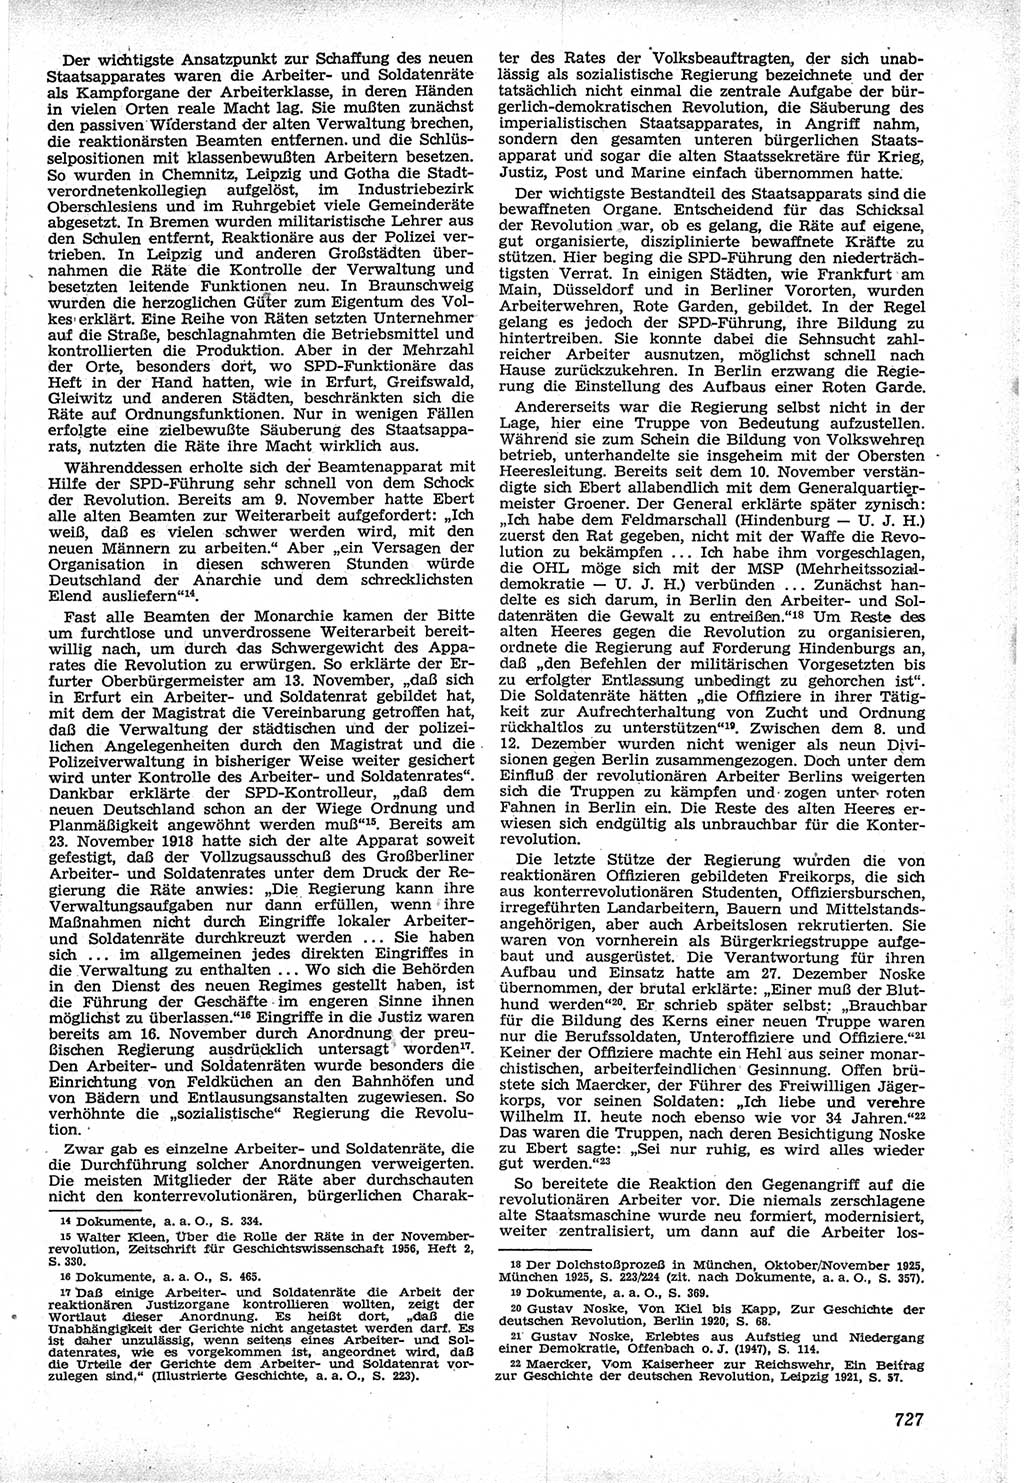 Neue Justiz (NJ), Zeitschrift für Recht und Rechtswissenschaft [Deutsche Demokratische Republik (DDR)], 12. Jahrgang 1958, Seite 727 (NJ DDR 1958, S. 727)